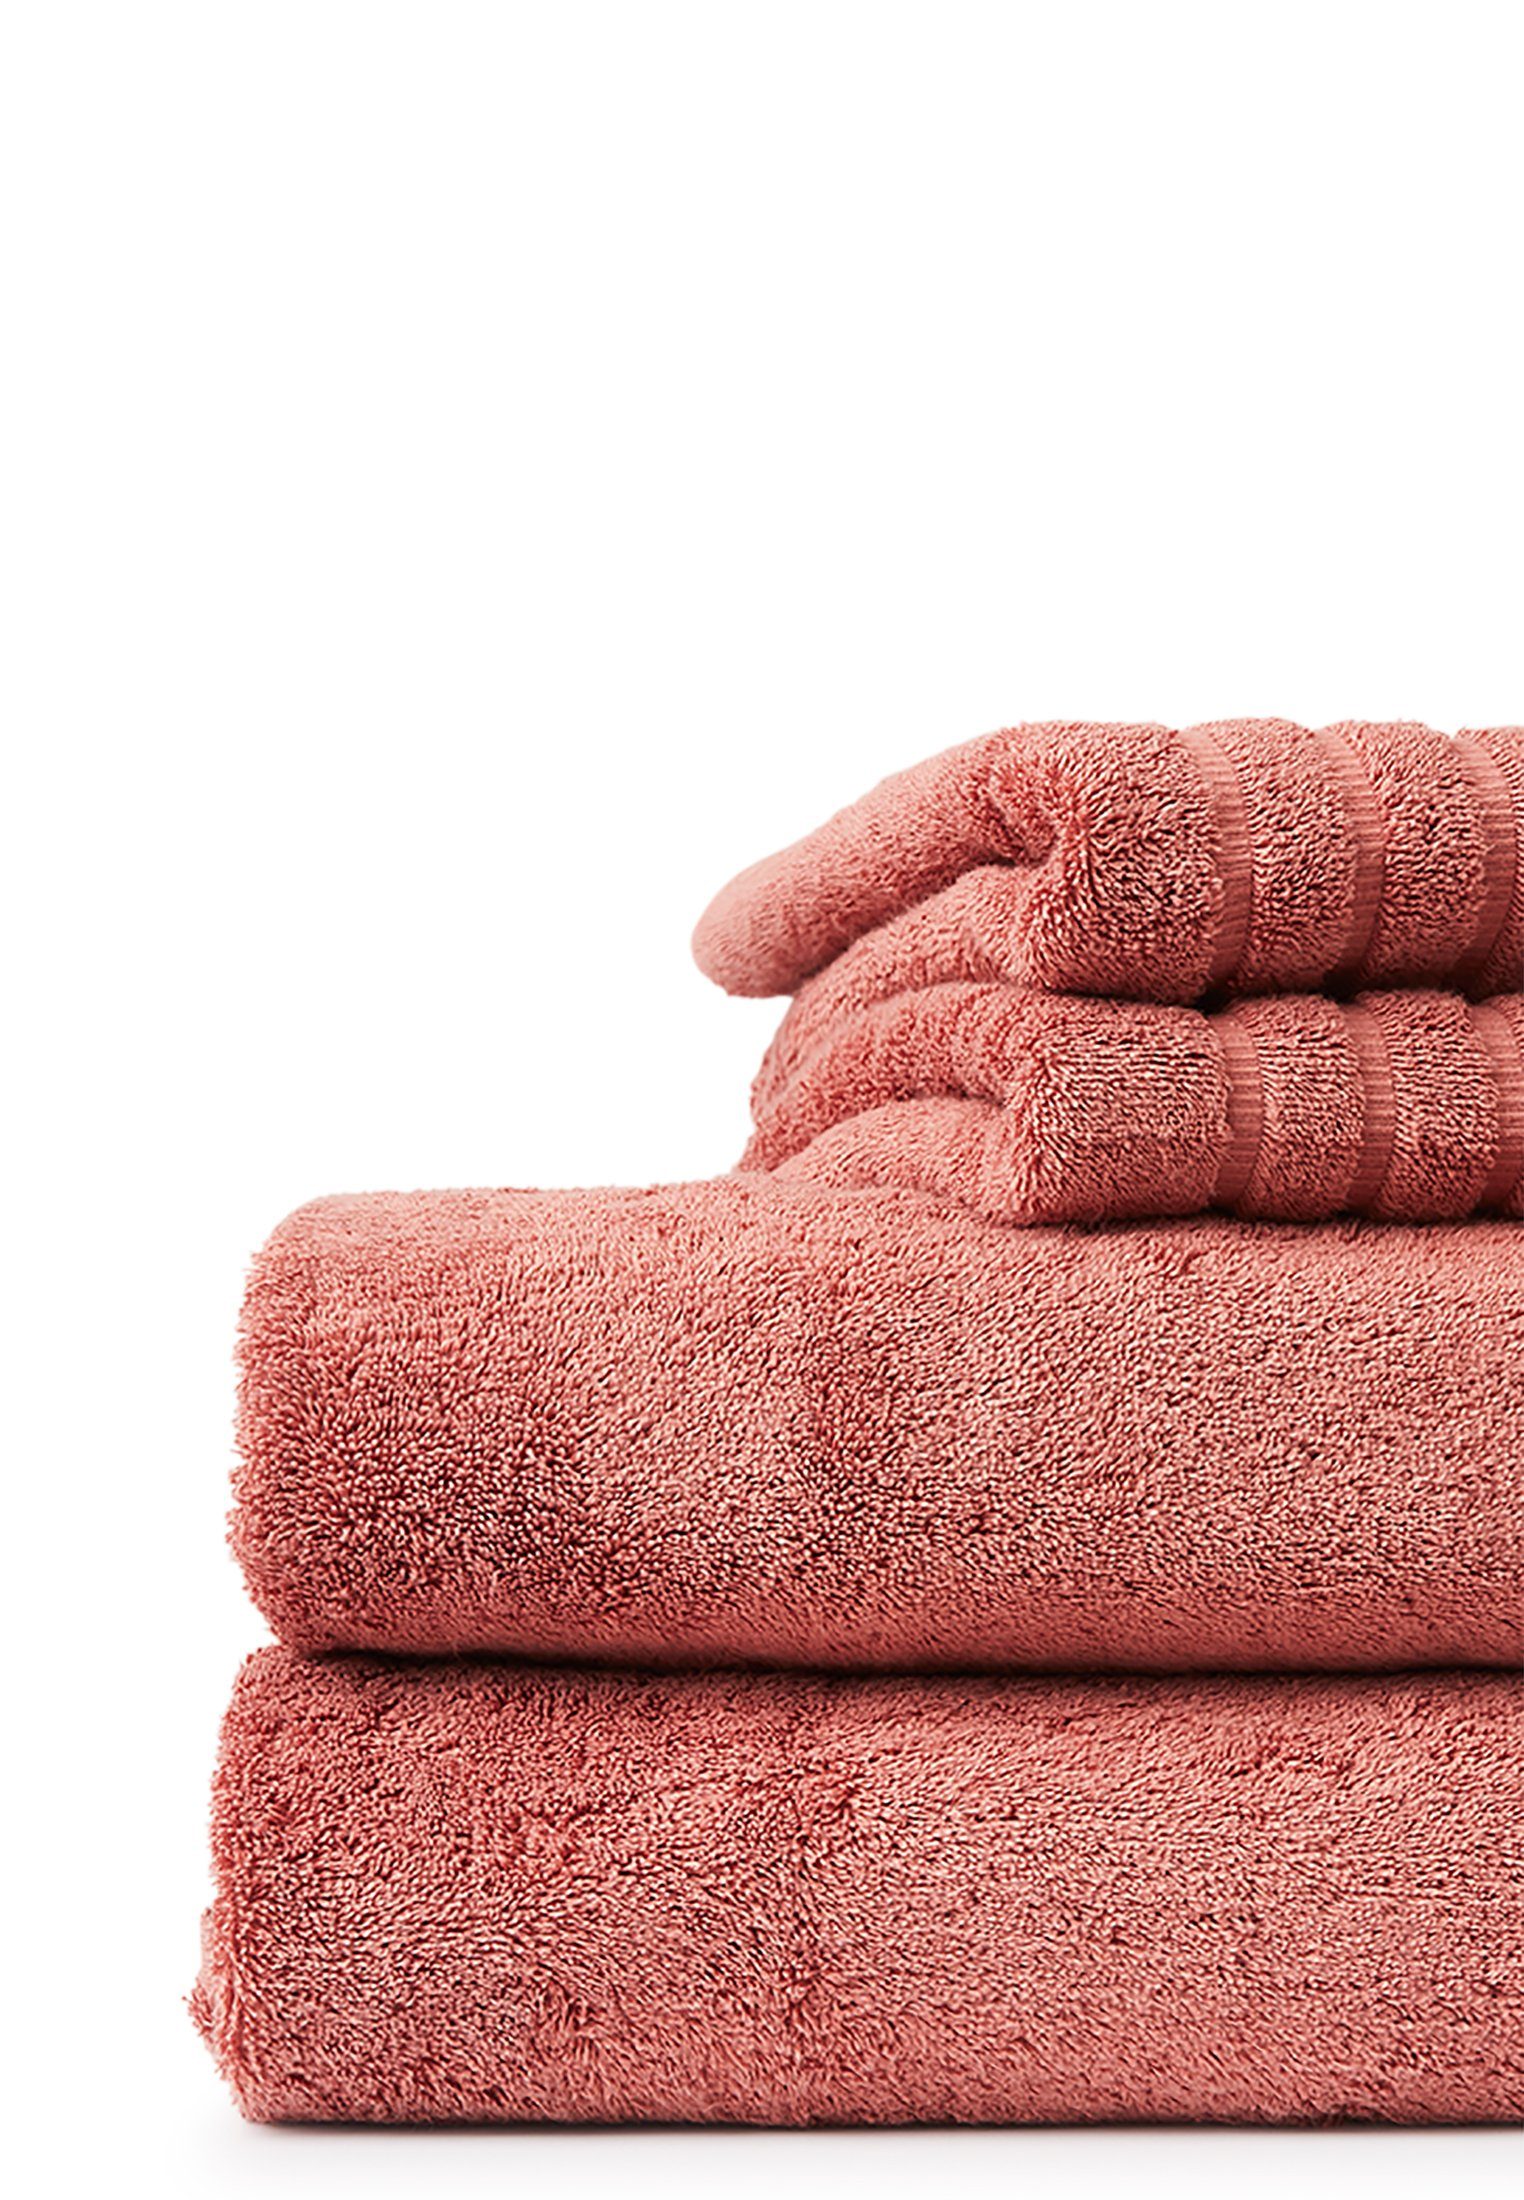 Lexington Handtuch Original Towel pink antique